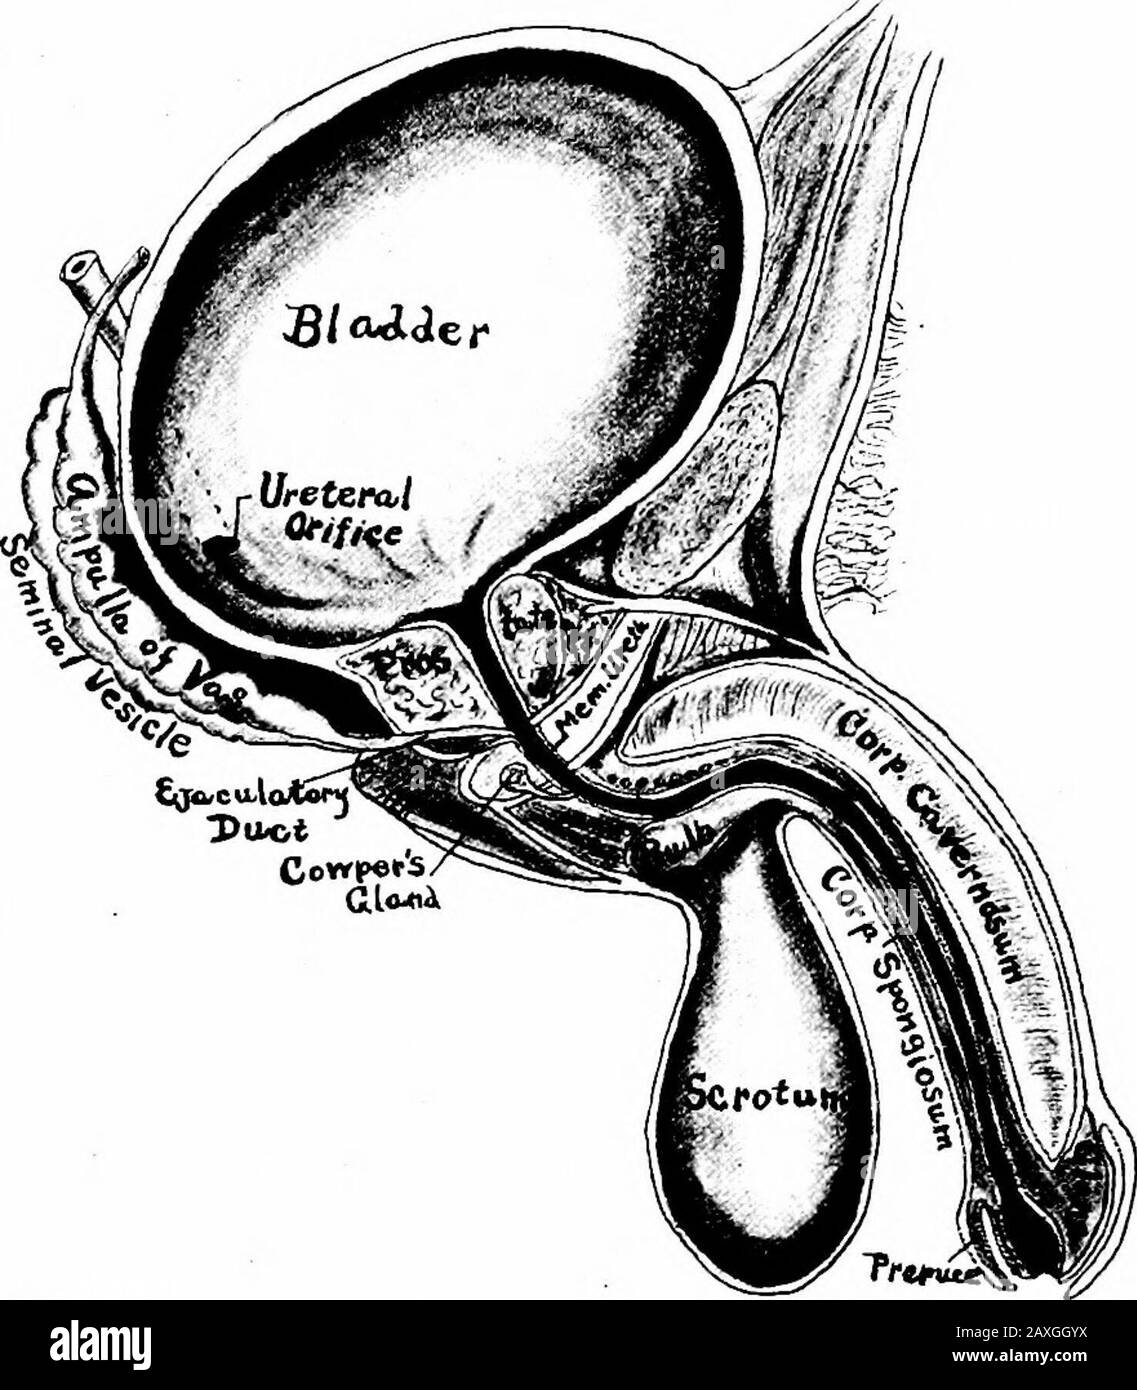 Un manuel d'anatomie . du disque entre la première et la seconde vertèbre lombaire il continue comme l'ureter approprié. L'uretère correct est un petit tube d'environ 4 mm d'épaisseur et 10 à 12 pouces (25 à 30 cm.) de longueur. Il s'étend de la limite supérieure de la seconde vertèbre lombaire à la vessie. La première partie {parsabdominalis) se trouve dans la cavité abdominale et correspond presque à la ligne médiane. La seconde moitié [pars pelvina) se trouve dans la cavité de pel-vic. Quand il atteint la vessie, il entre structureobhquely et se produit pour près d'un pouce (2,5 cm.) entre les manteaux mus et mucus. Son Banque D'Images